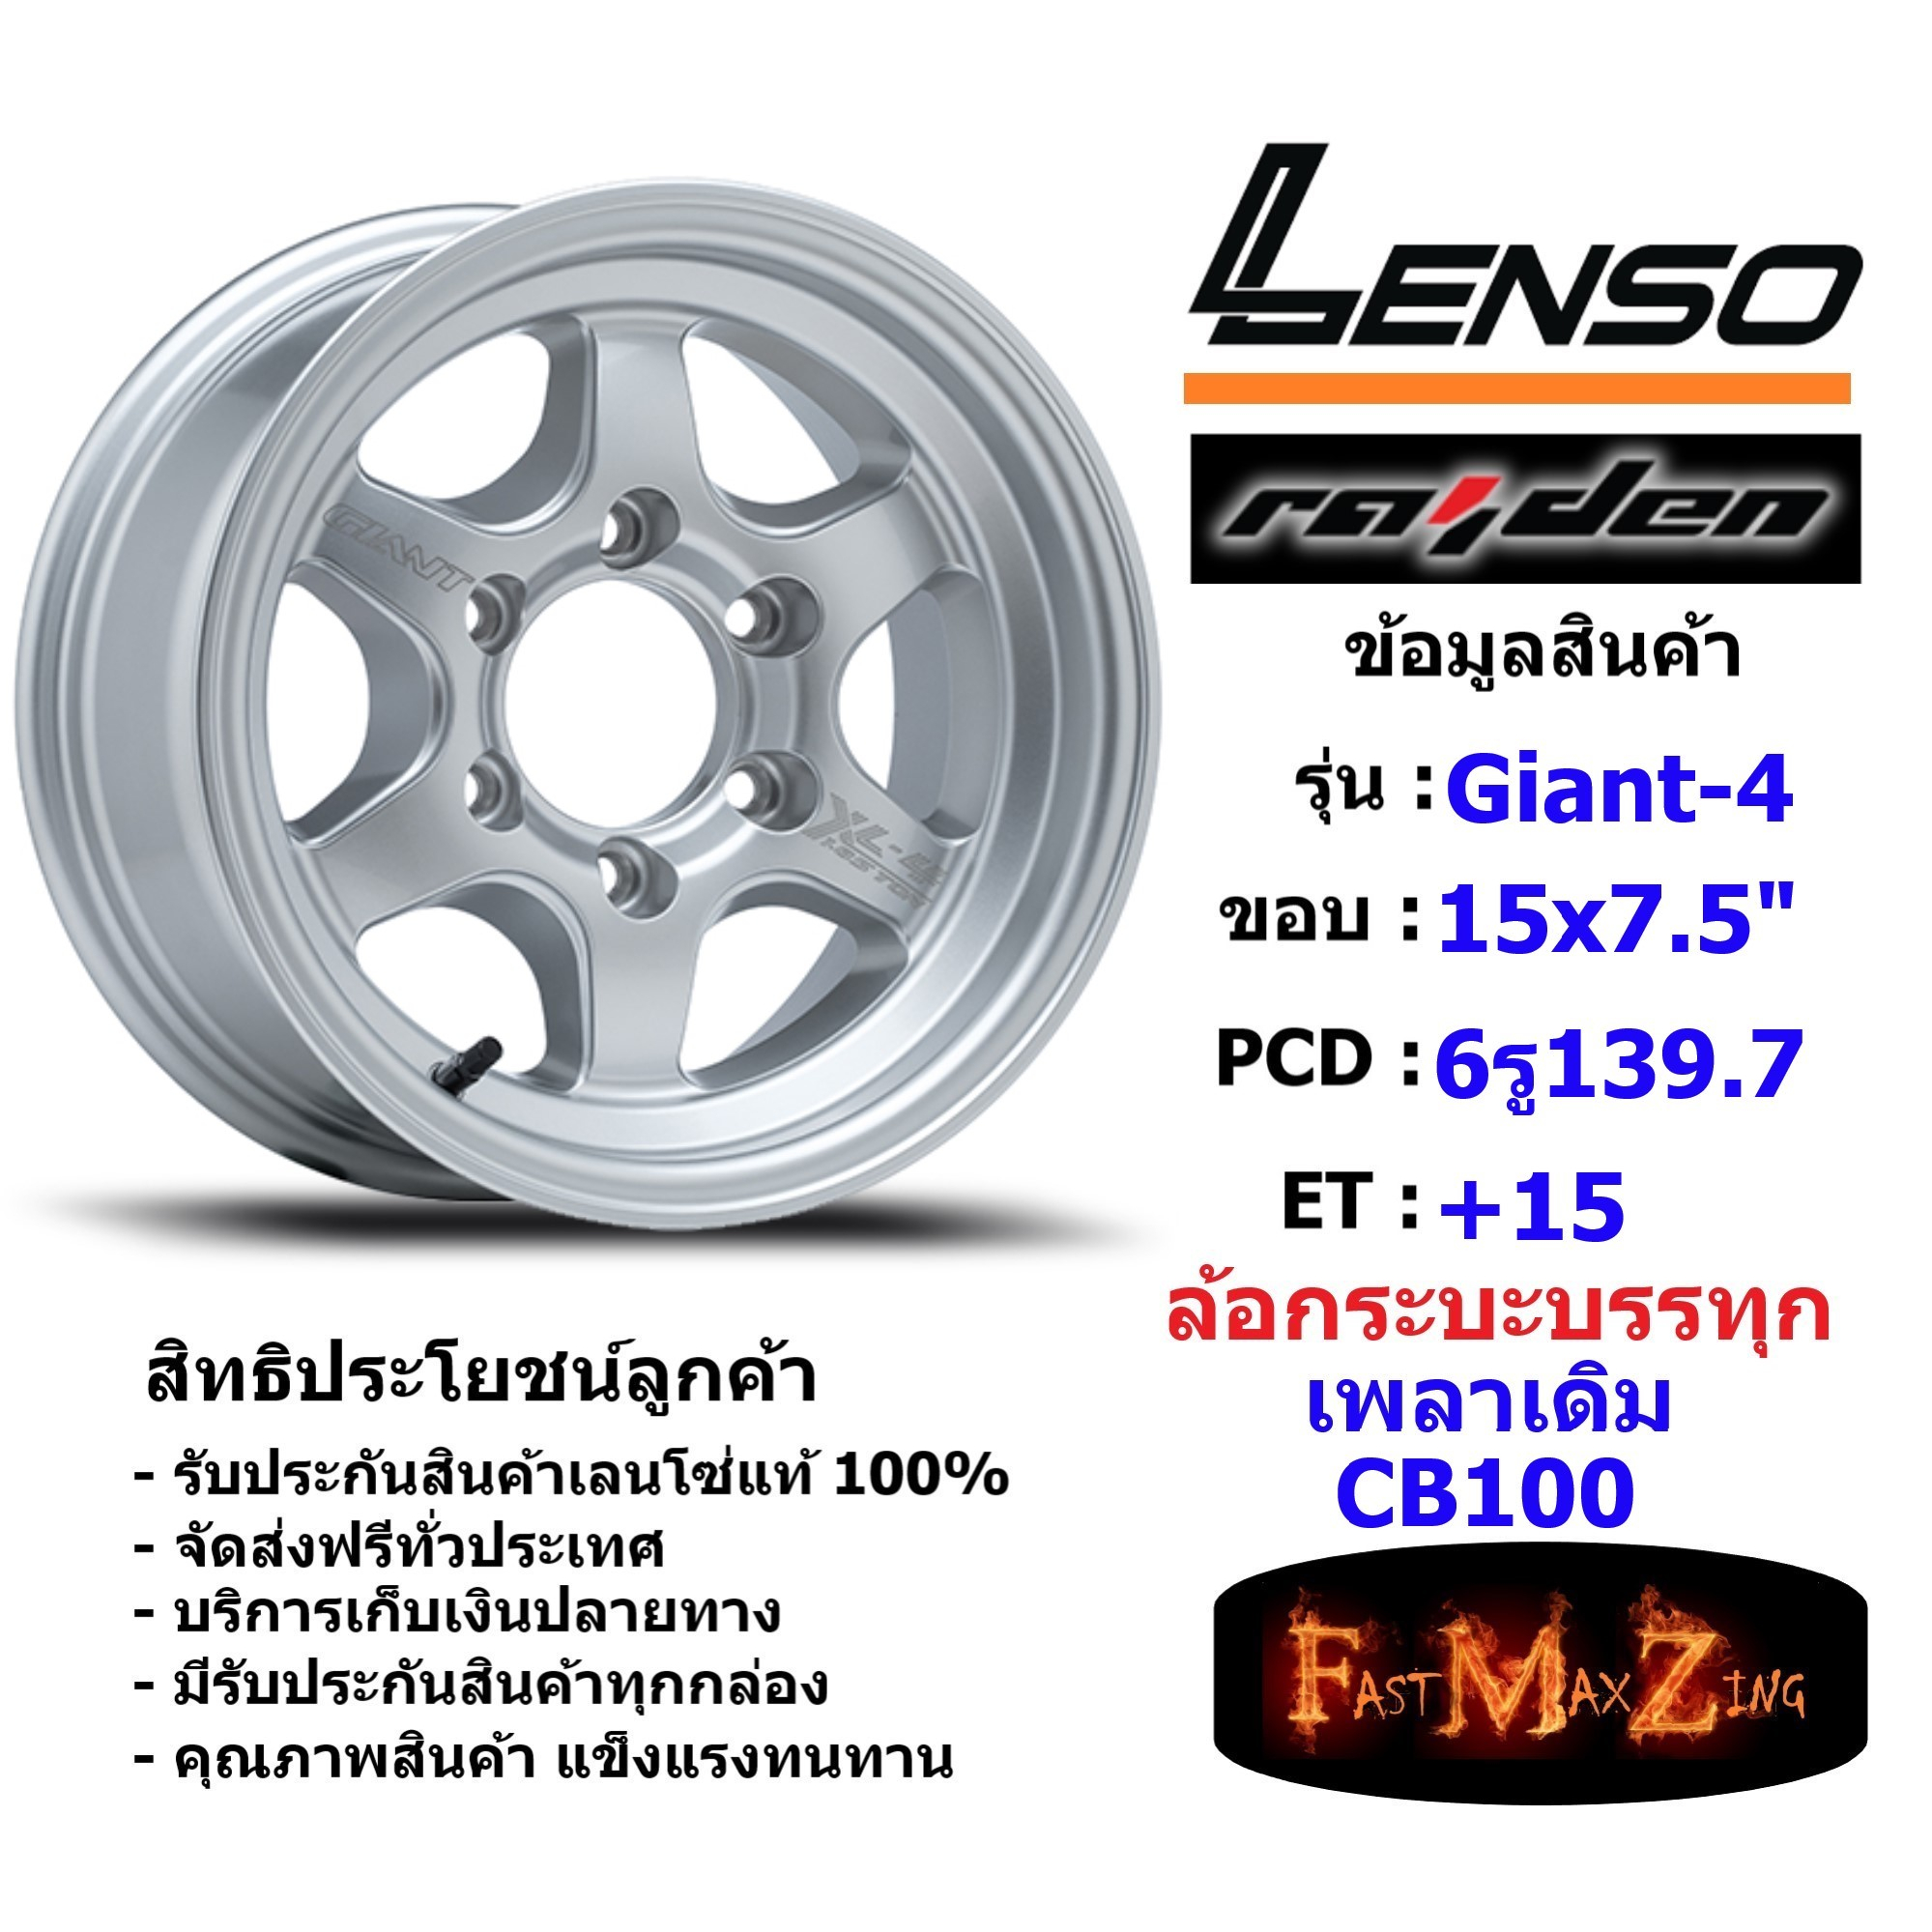 แม็กบรรทุก เพลาเดิม Lenso Wheel GIANT-4 ขอบ 15x7.5" 6รู139.7 ET+15 สีSW ล้อแม็ก เลนโซ่ lenso15 แม็กขอบ15 CB100